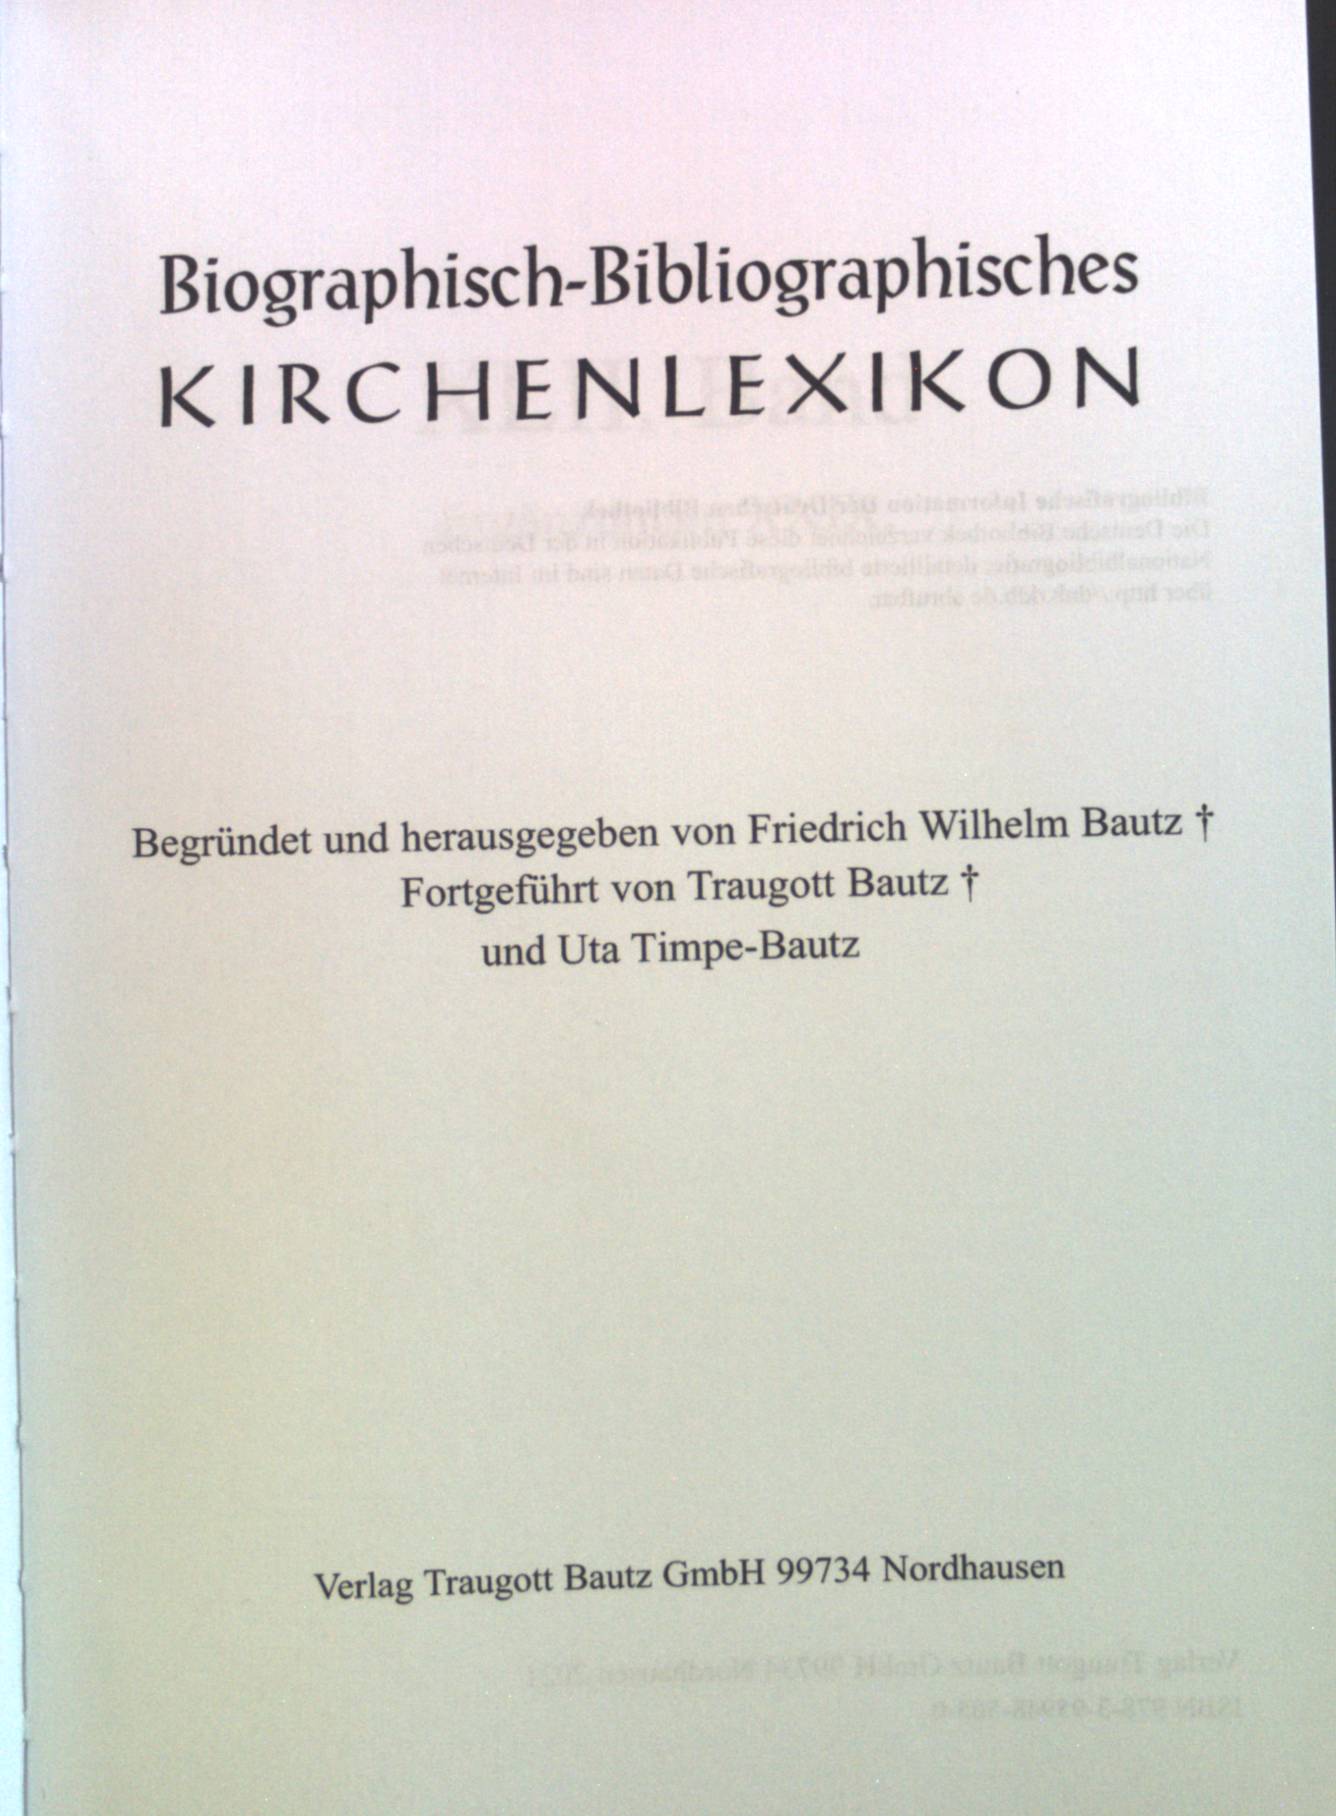 Biographisch-Bibliographisches Kirchenlexikon. Ergänzungen XXIX. 42. Band. - Bautz, Friedrich Wilhelm, Traugott Bautz Uta Timpe-Bautz u. a.